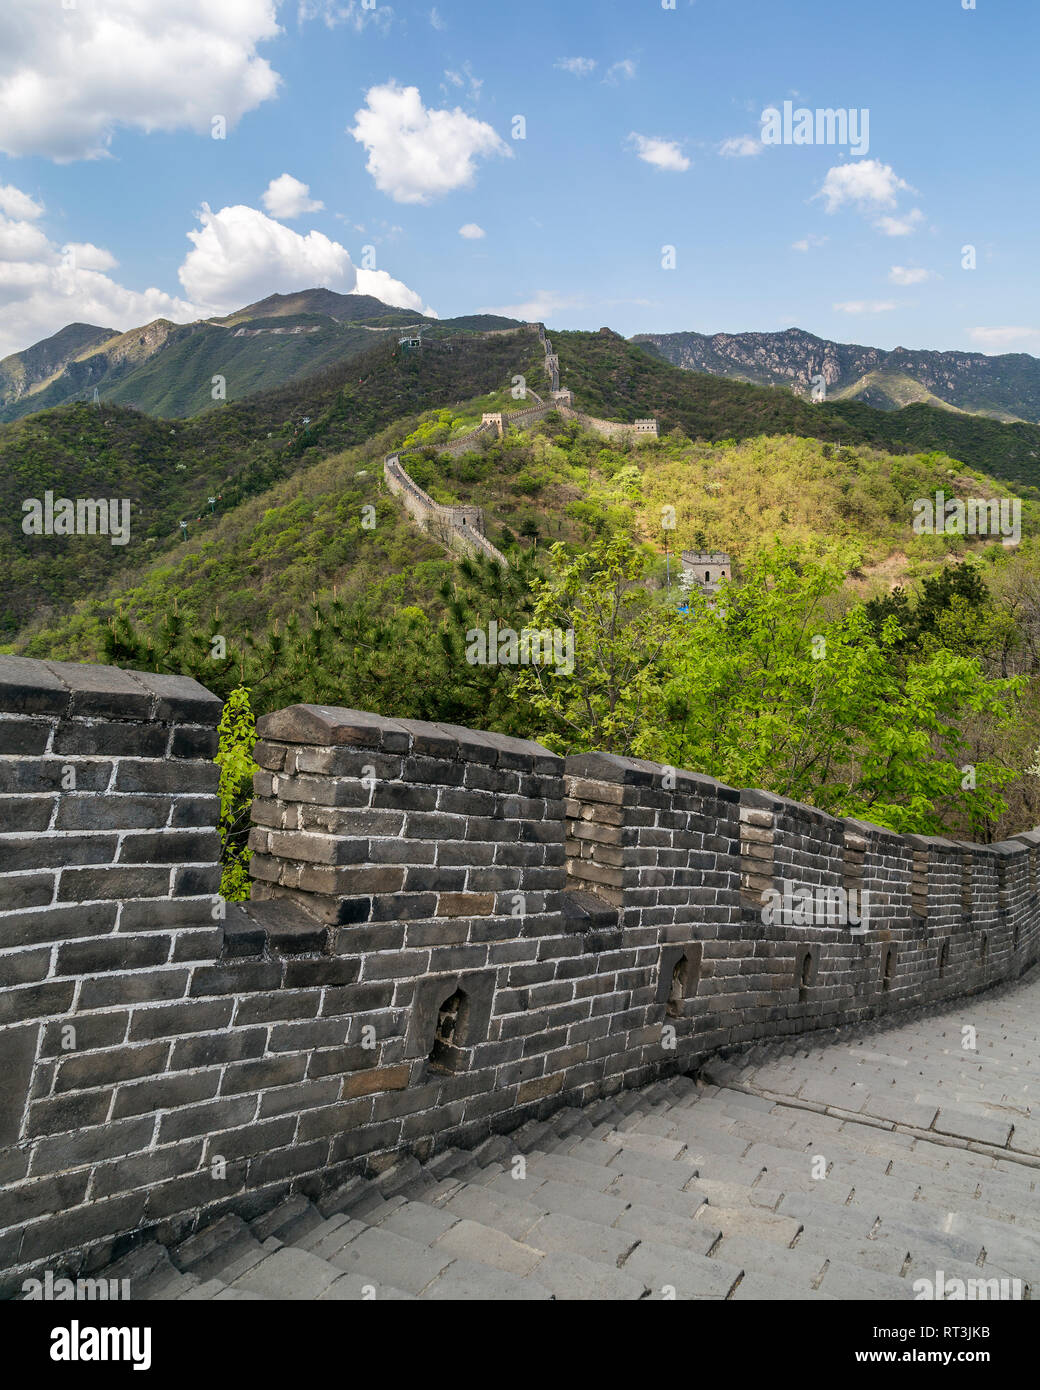 Los empinados escalones de piedra de la Gran Muralla de China en Mutianyu en primer plano. Varias torres de vigilancia puede ser visto como la pared sube a las montañas. Foto de stock